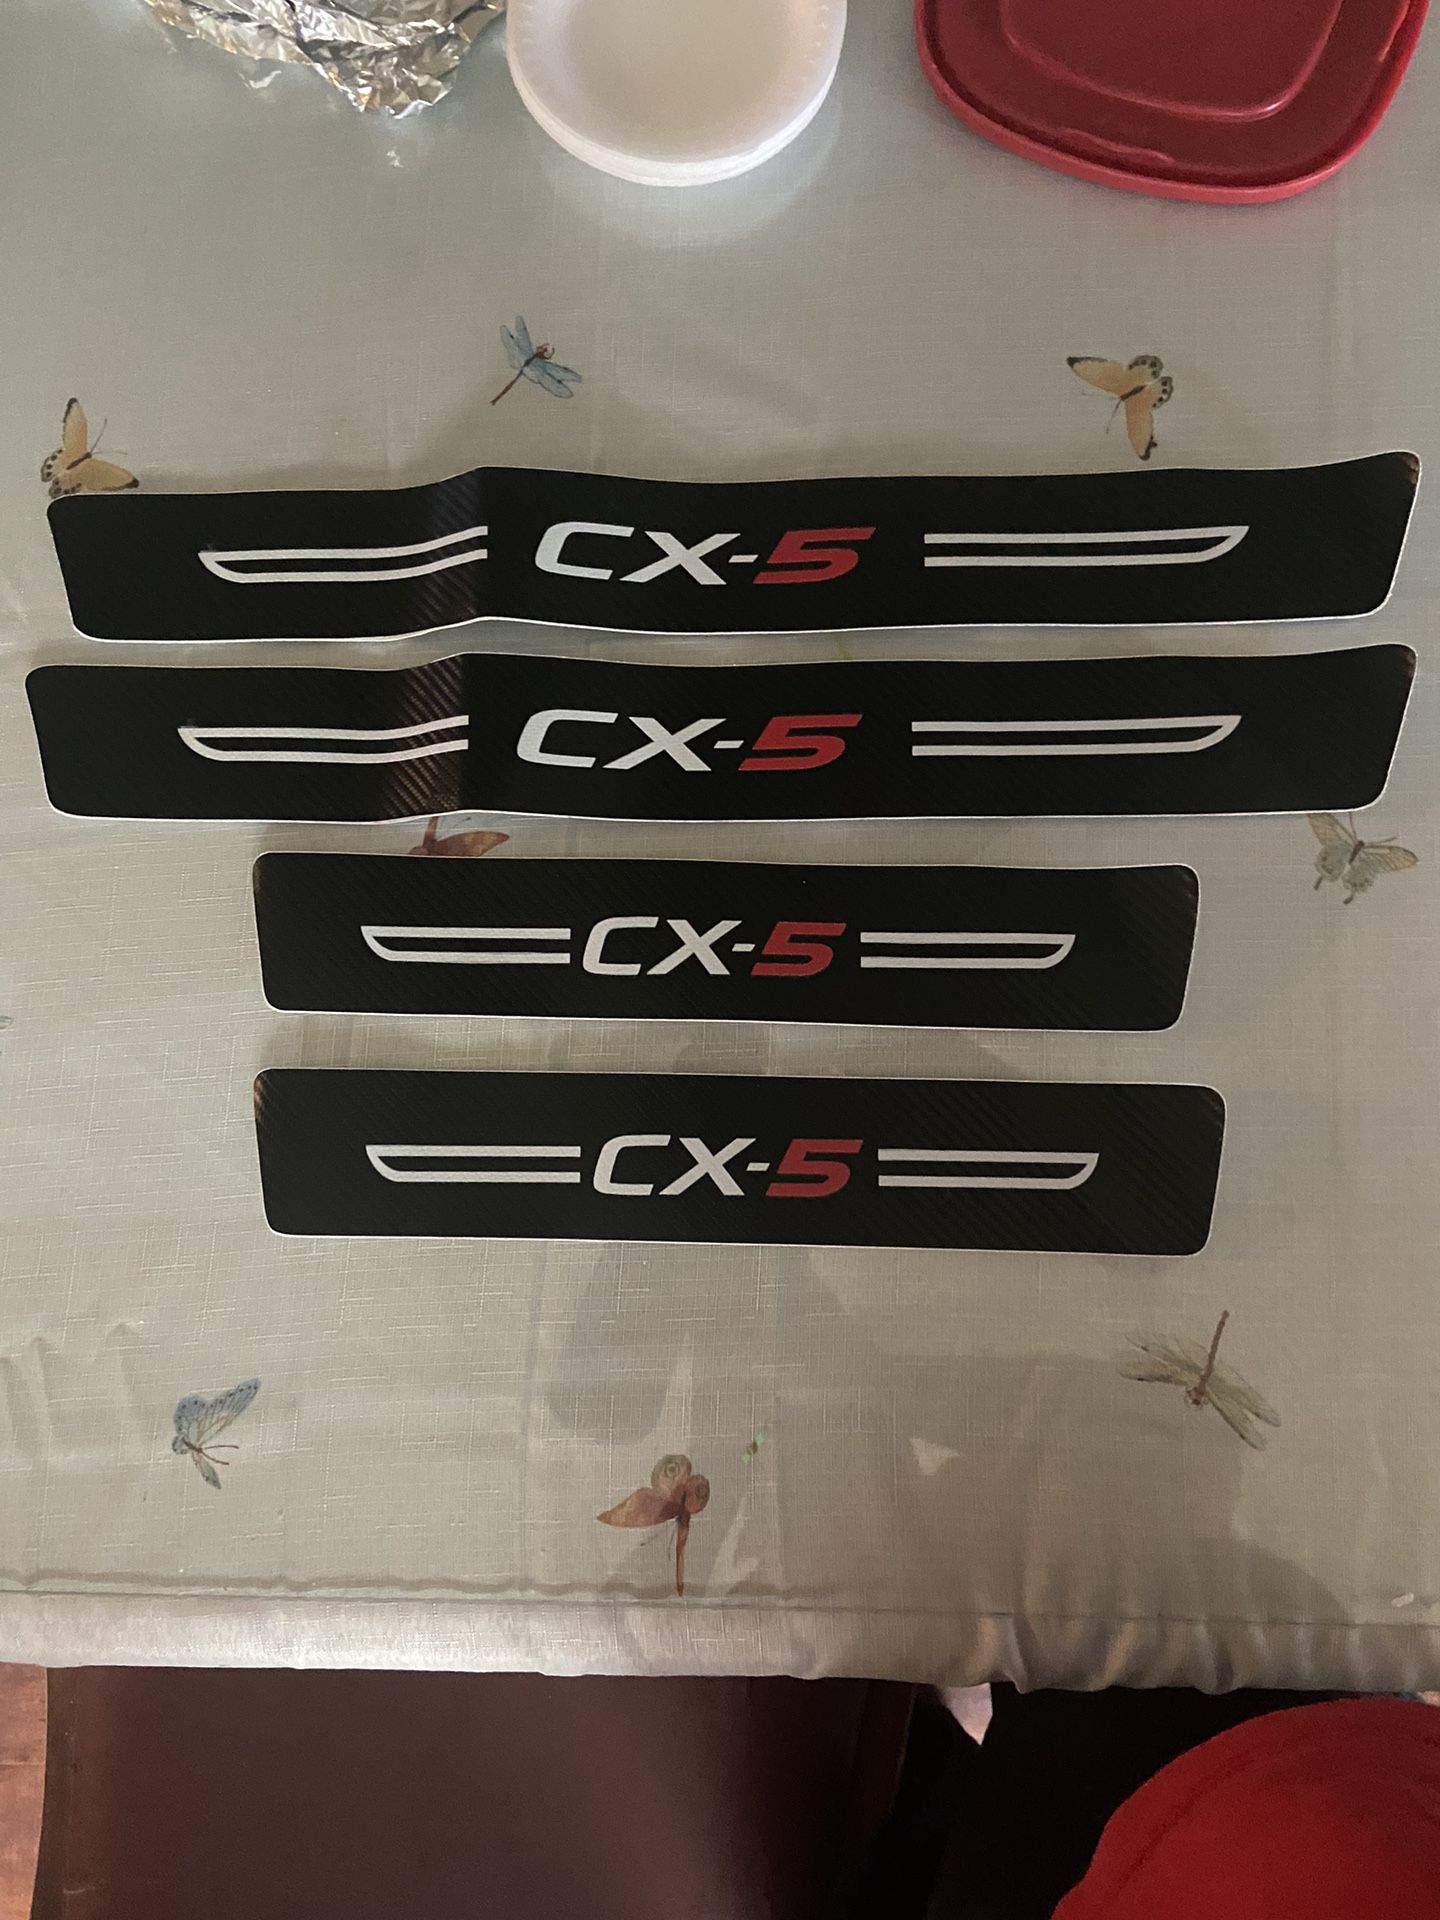 Carbon Fiber Door Sill Guard Scuff Pad Cover Set For Mazda CX5 CX-5